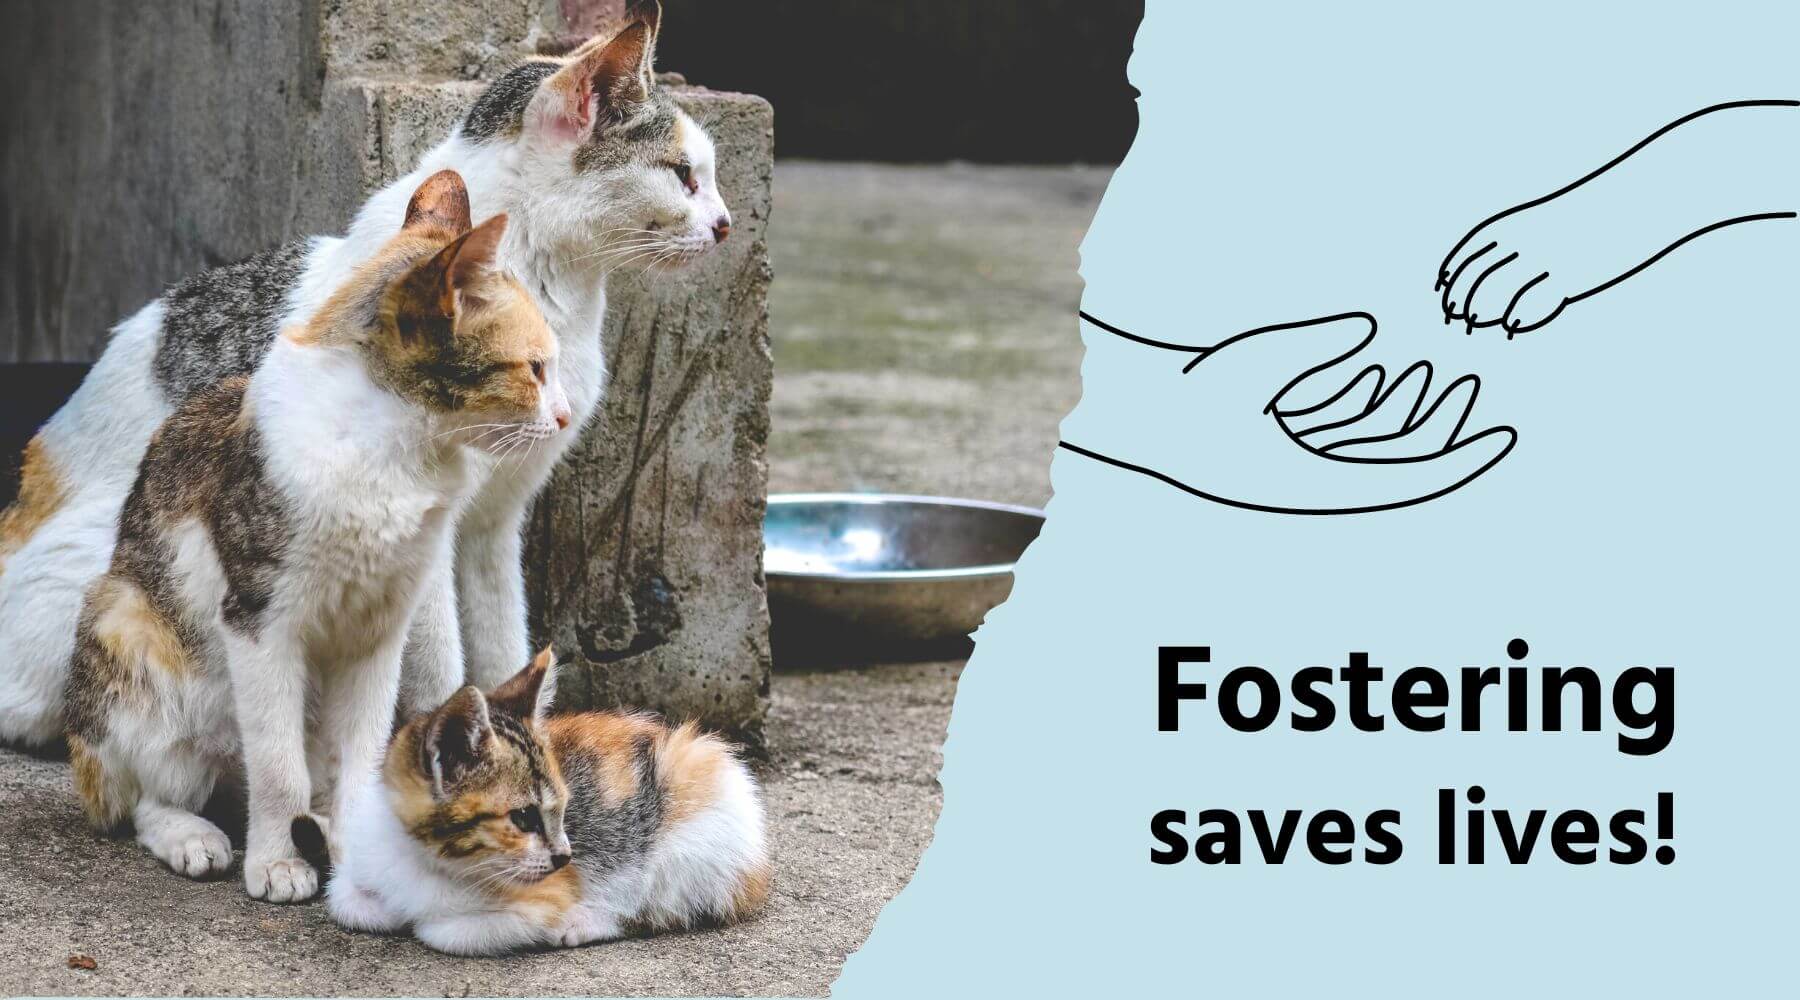 Bild mit Aufschrift "Fostering saves lifes" mit zwei Straßenkatzen.